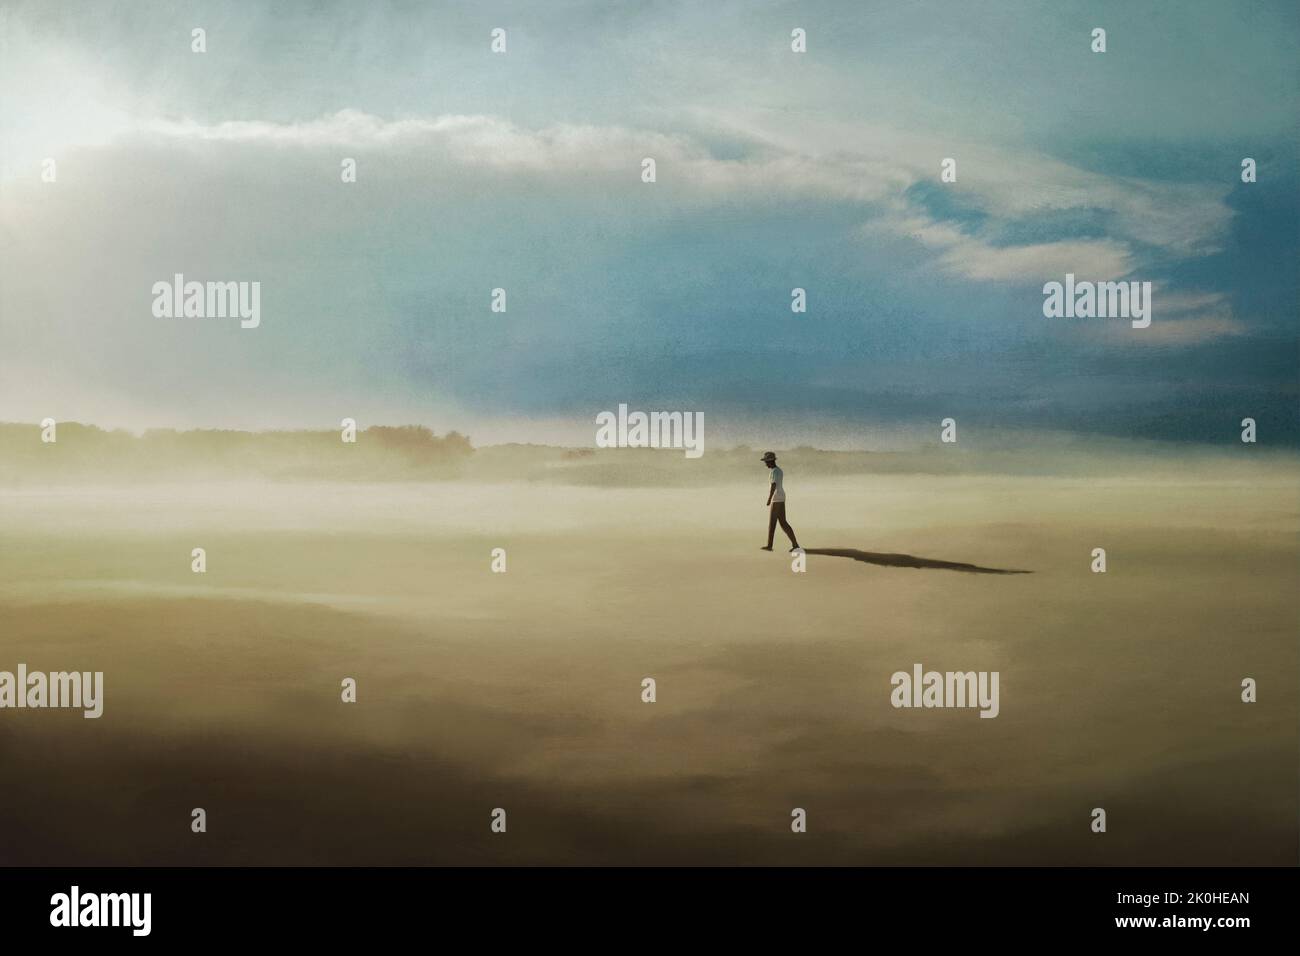 un homme solitaire marche dans un paysage désertique Banque D'Images